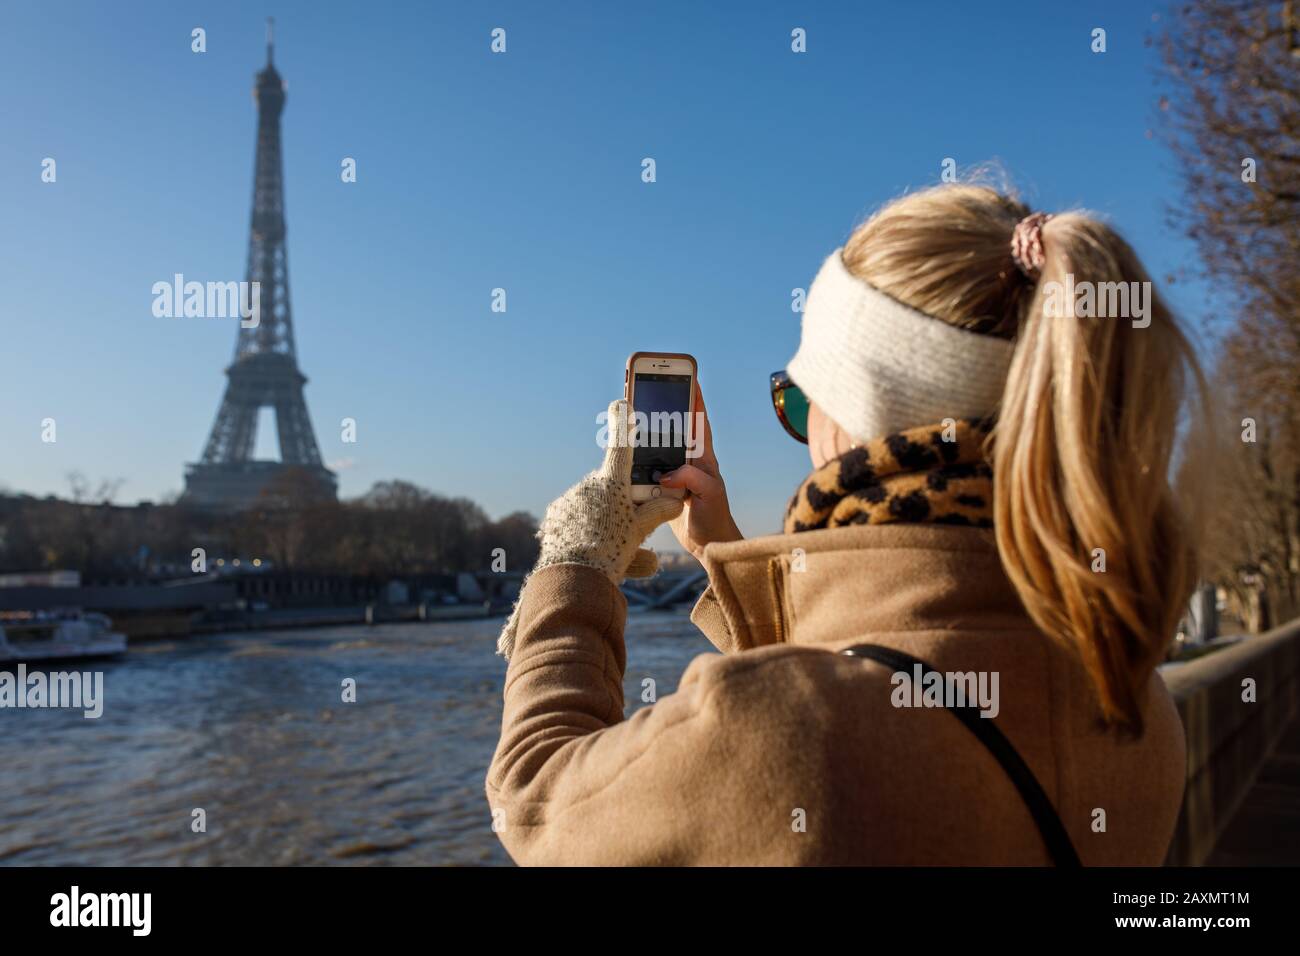 Un jeune adulte prend une photo iPhone de la Tour Eiffel à Paris. Banque D'Images